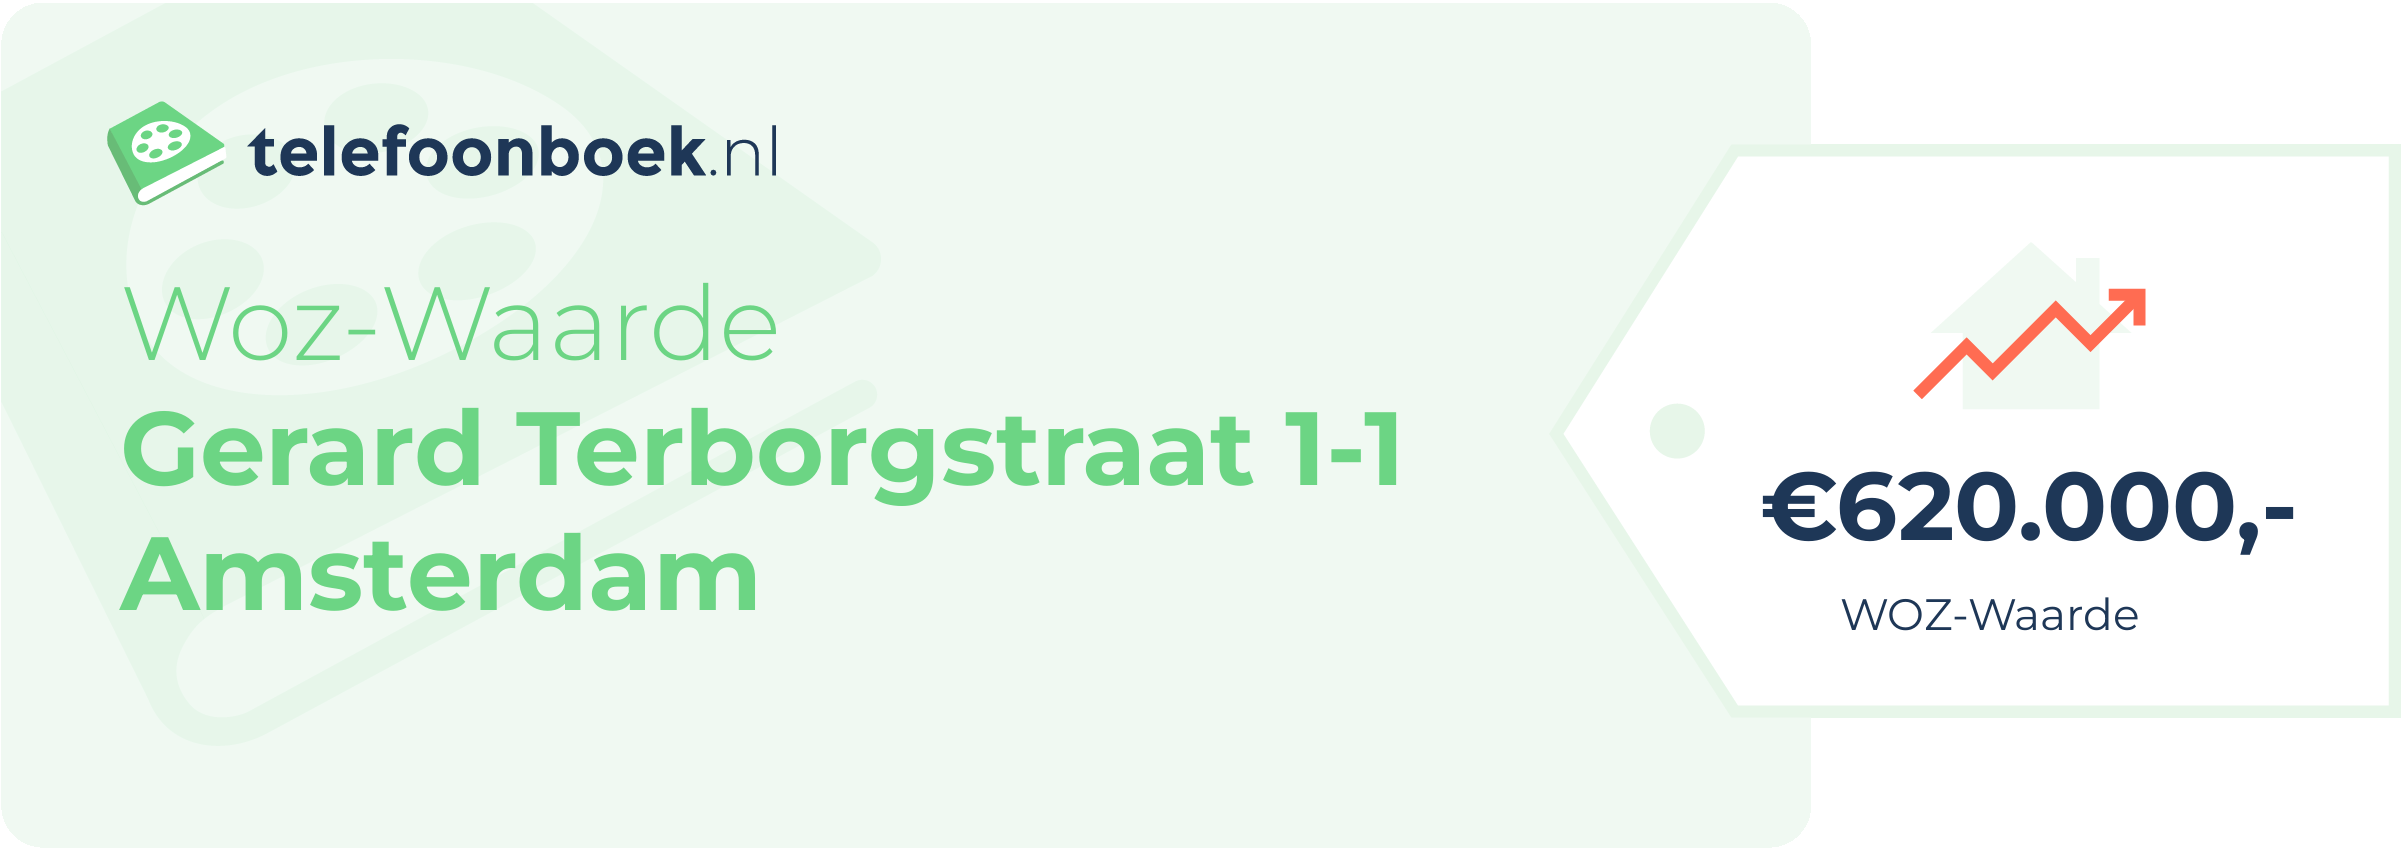 WOZ-waarde Gerard Terborgstraat 1-1 Amsterdam